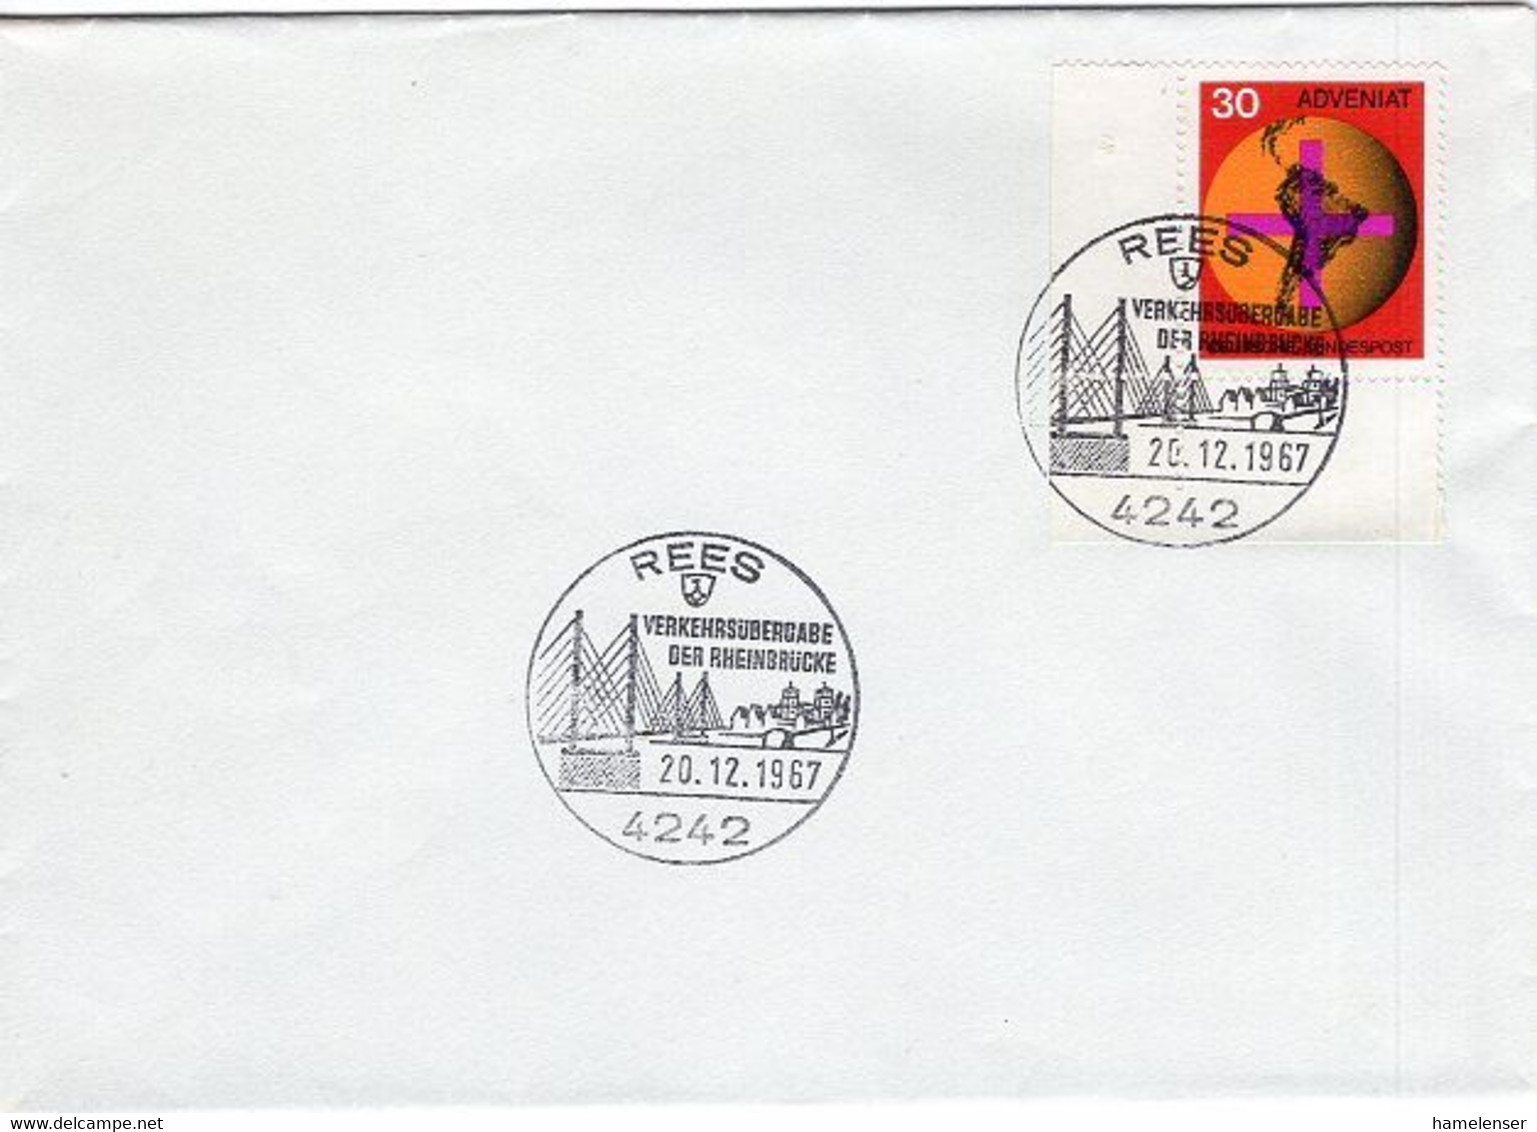 52325 - Bund - 1967 - 30Pfg Adveniat EF A Umschlag M SoStpl REES - VERKEHRSUEBERGABE DER RHEINBRUECKE - Ponti